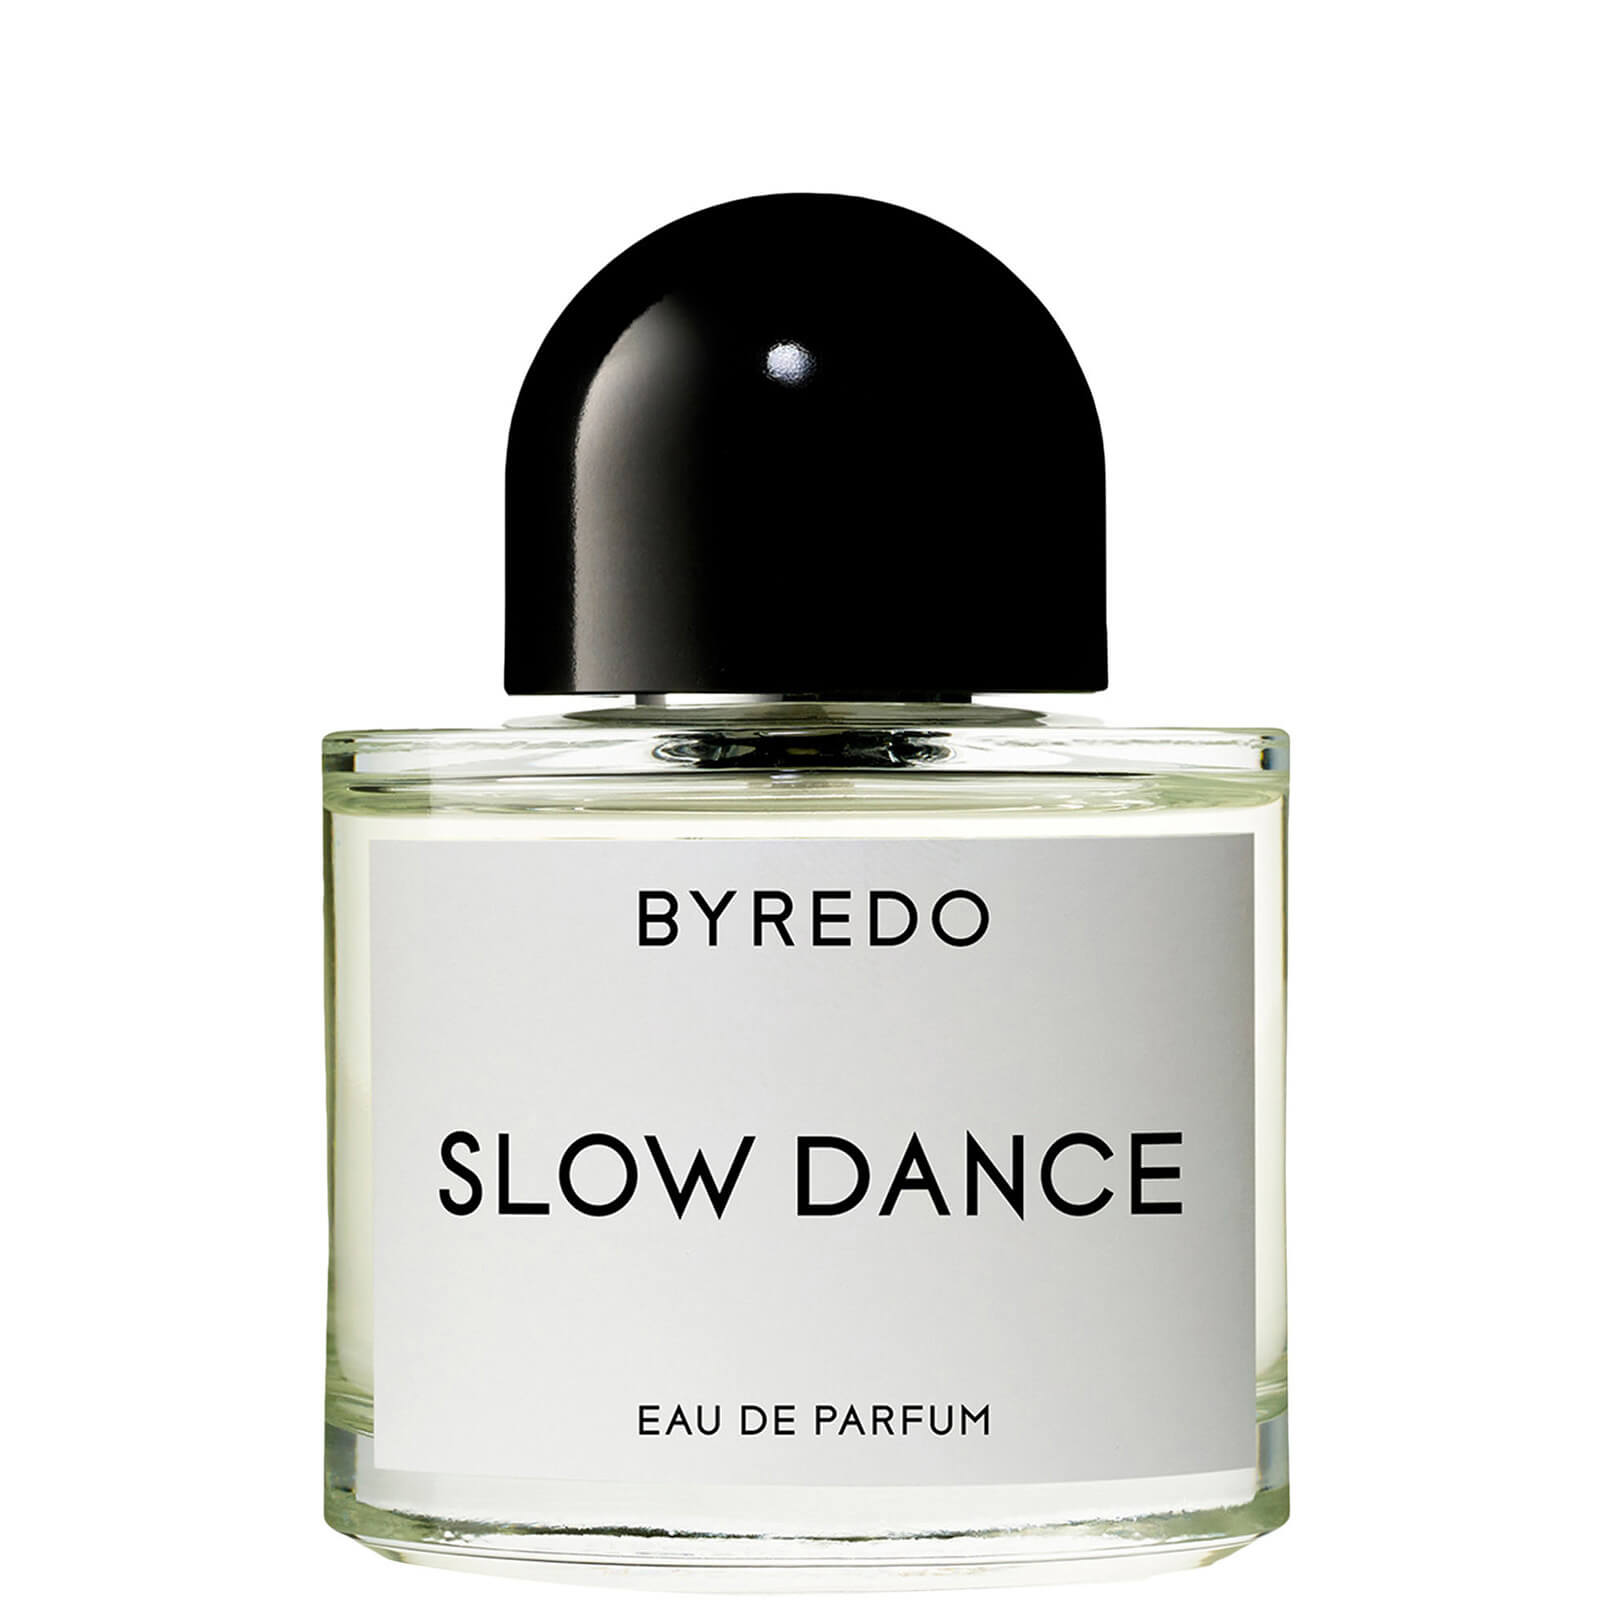 Photos - Women's Fragrance Byredo Slow Dance Eau de Parfum 50ml 